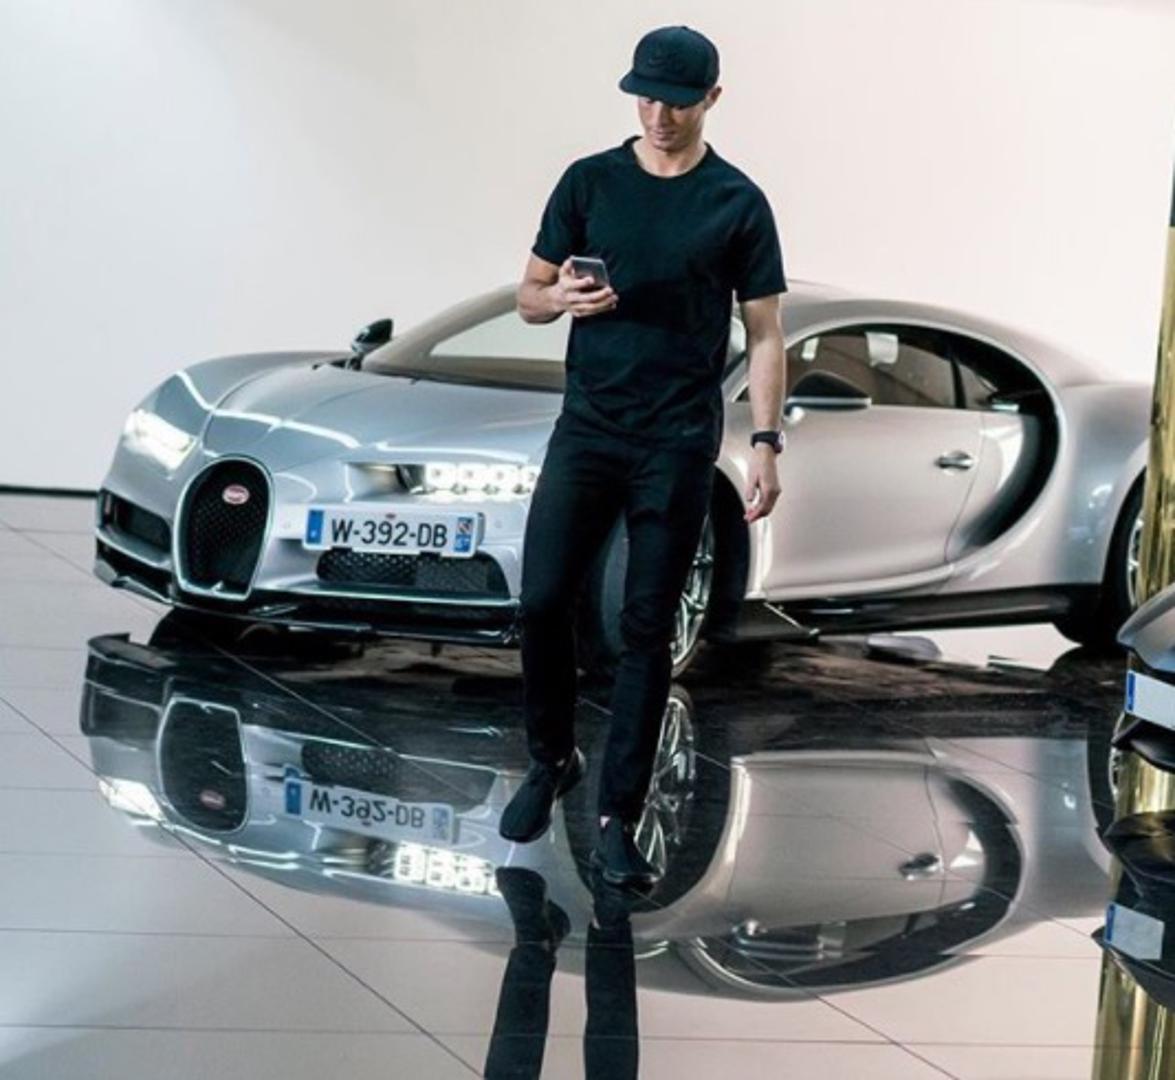 Posljednji i najskuplji automobil u Ronaldovoj kolekciji. Bugatti Chiron košta 25 milijuna kuna